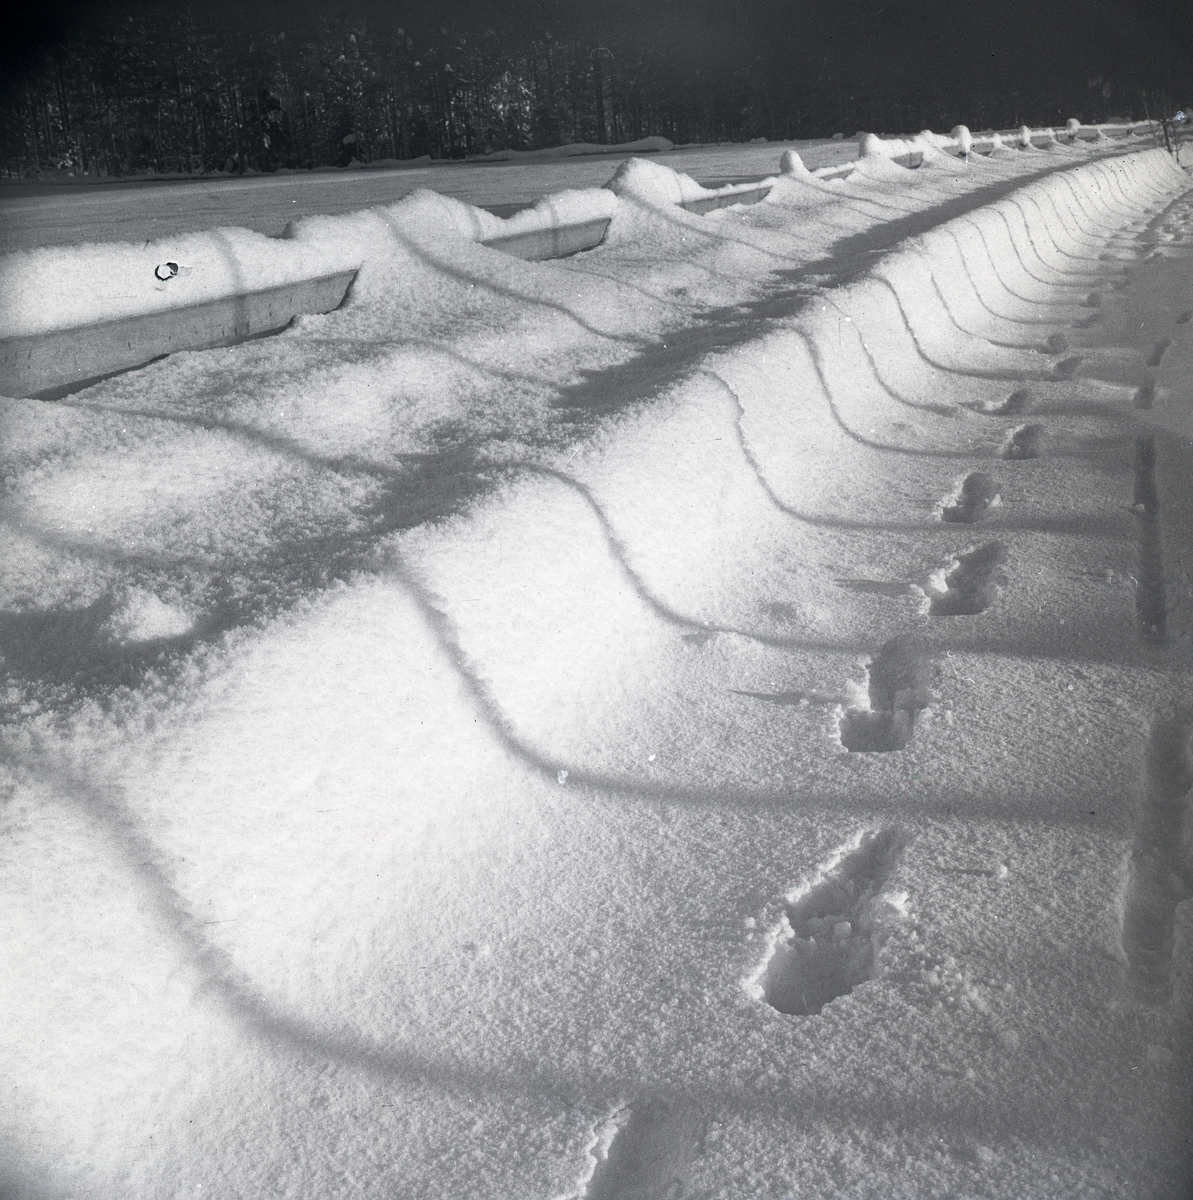 Översnöad väg med vägräcke. Det bildas skuggor av gärdesgårdsstörar på snön. Man ser även fotspår, januari 1948.